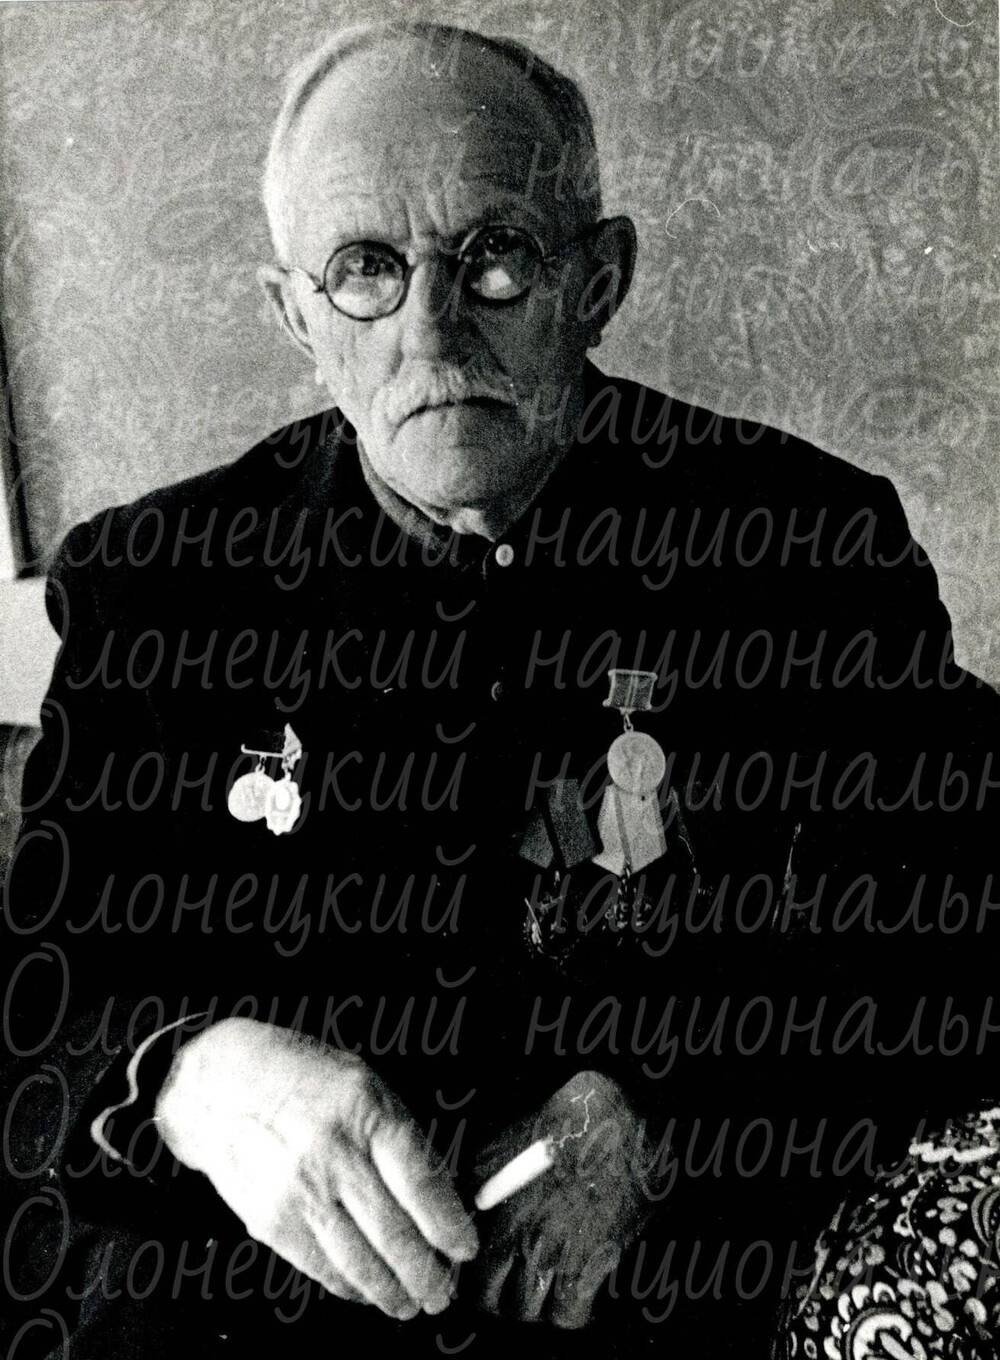 Фото, Антипов П.Т., автор Казнин В.А., ч/б, 1975 г.